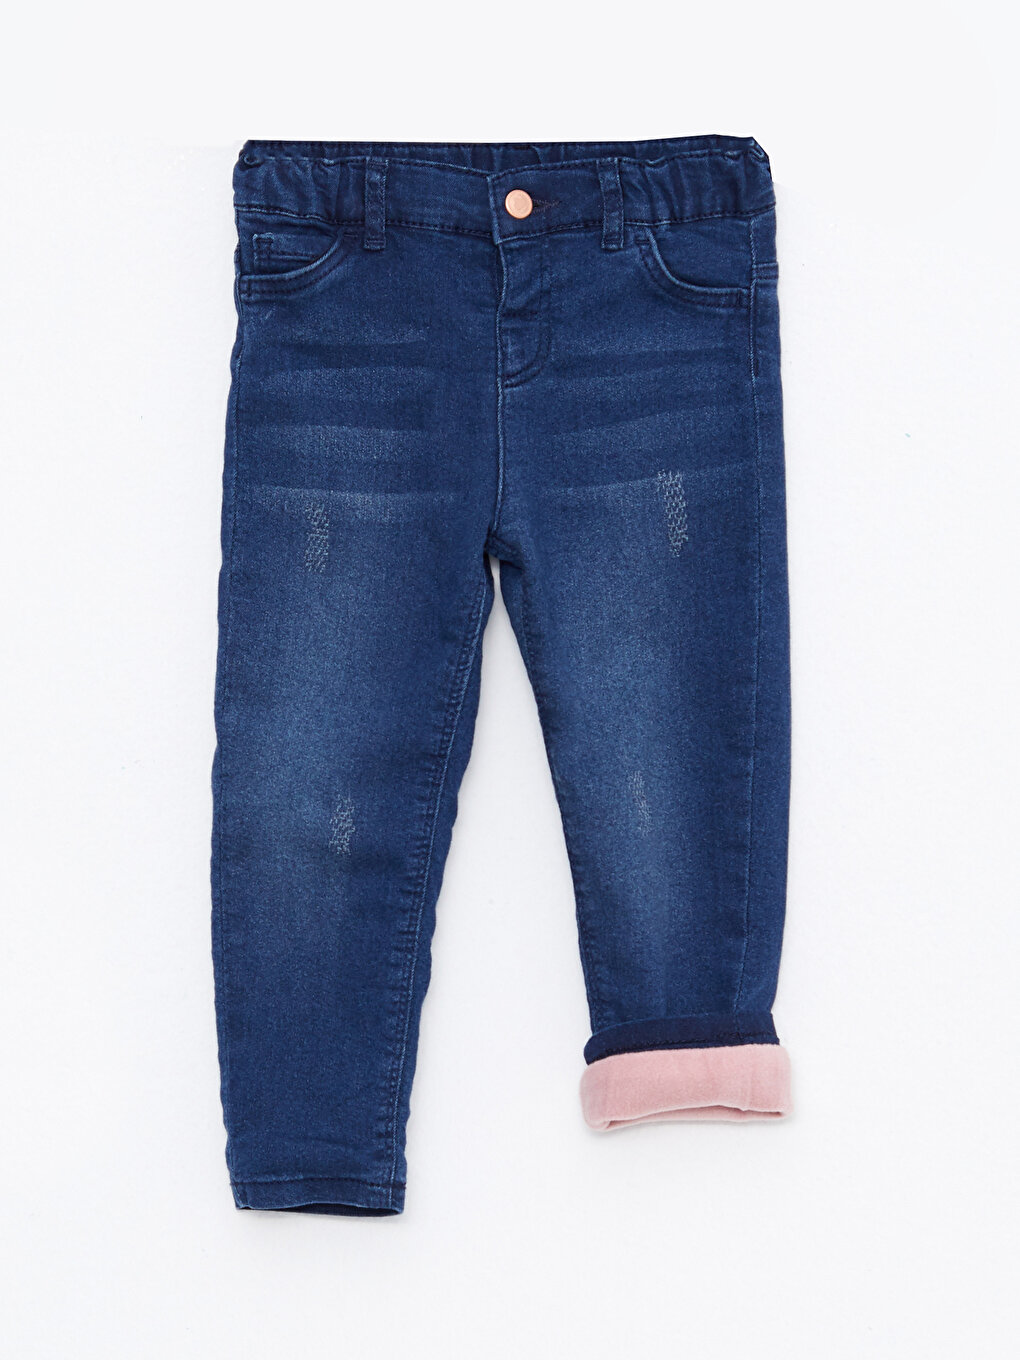 Cheap YUBAOBEI Summer Girls High Waist Jeans Blue Slim Fit Denim Material  For Girls Trousers Pants | Joom